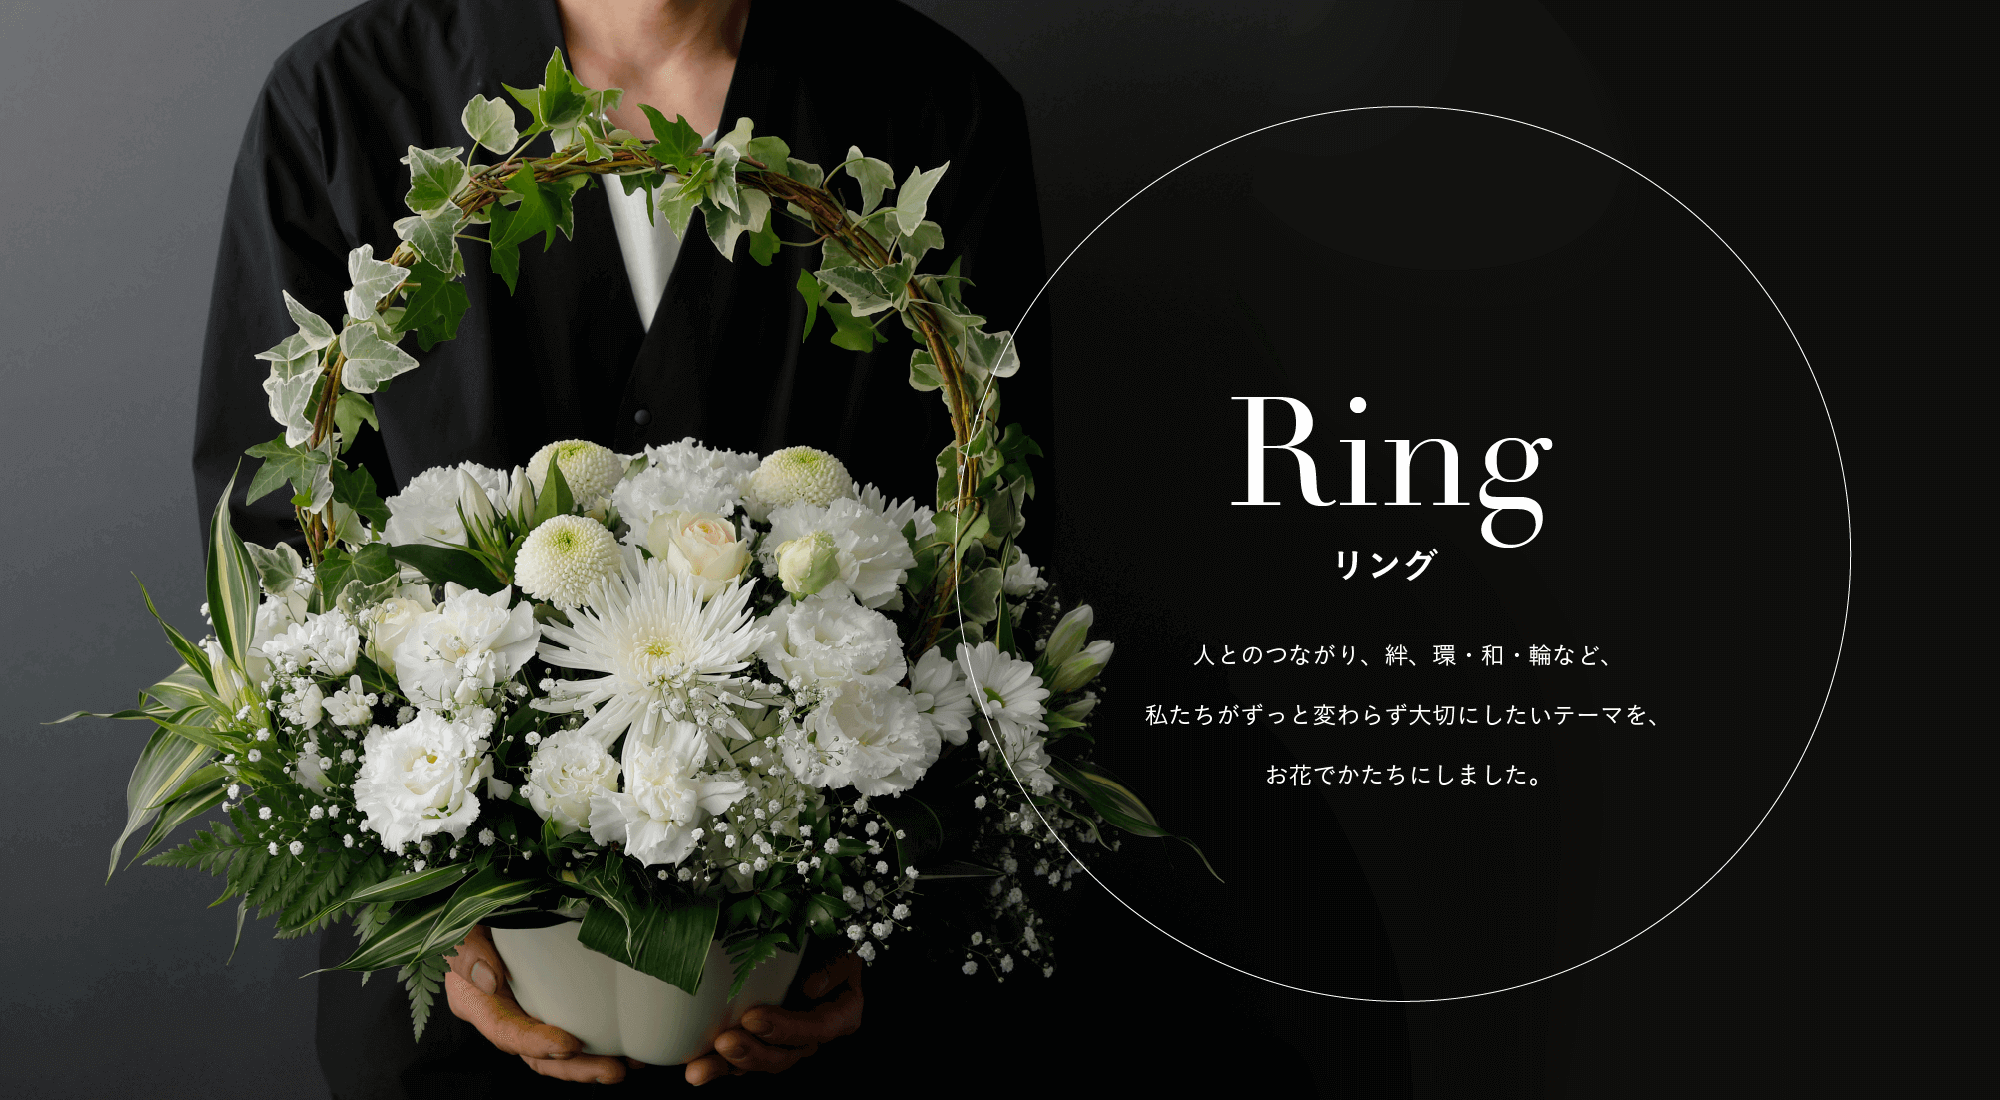 Ring リング 人とのつながり、絆、環、和、輪など、私たちがずっと変わらず大切にしたいテーマを、お花でかたちにしました。